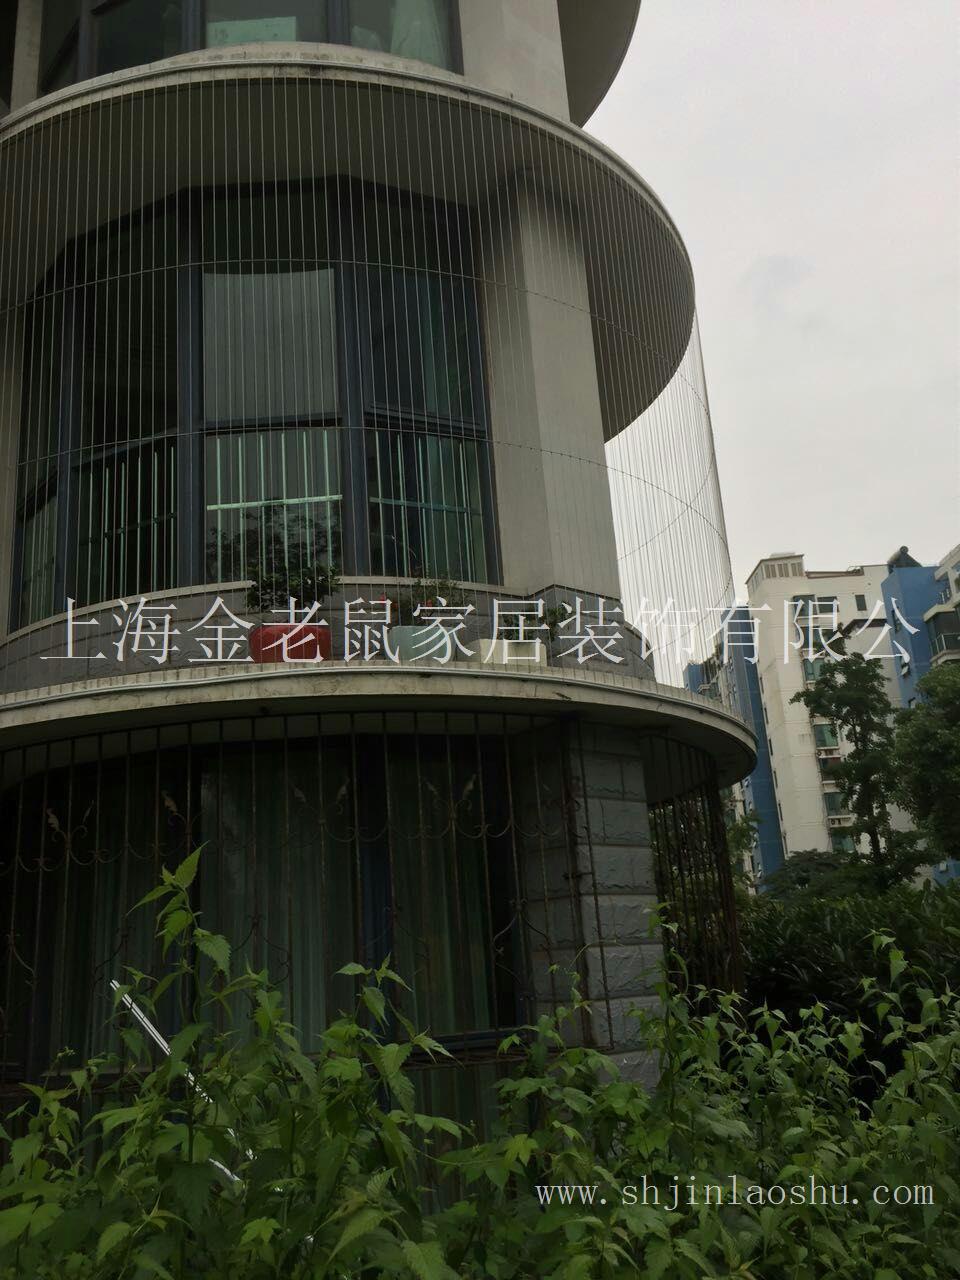 上海隐形防护网安装,隐形防护网价格